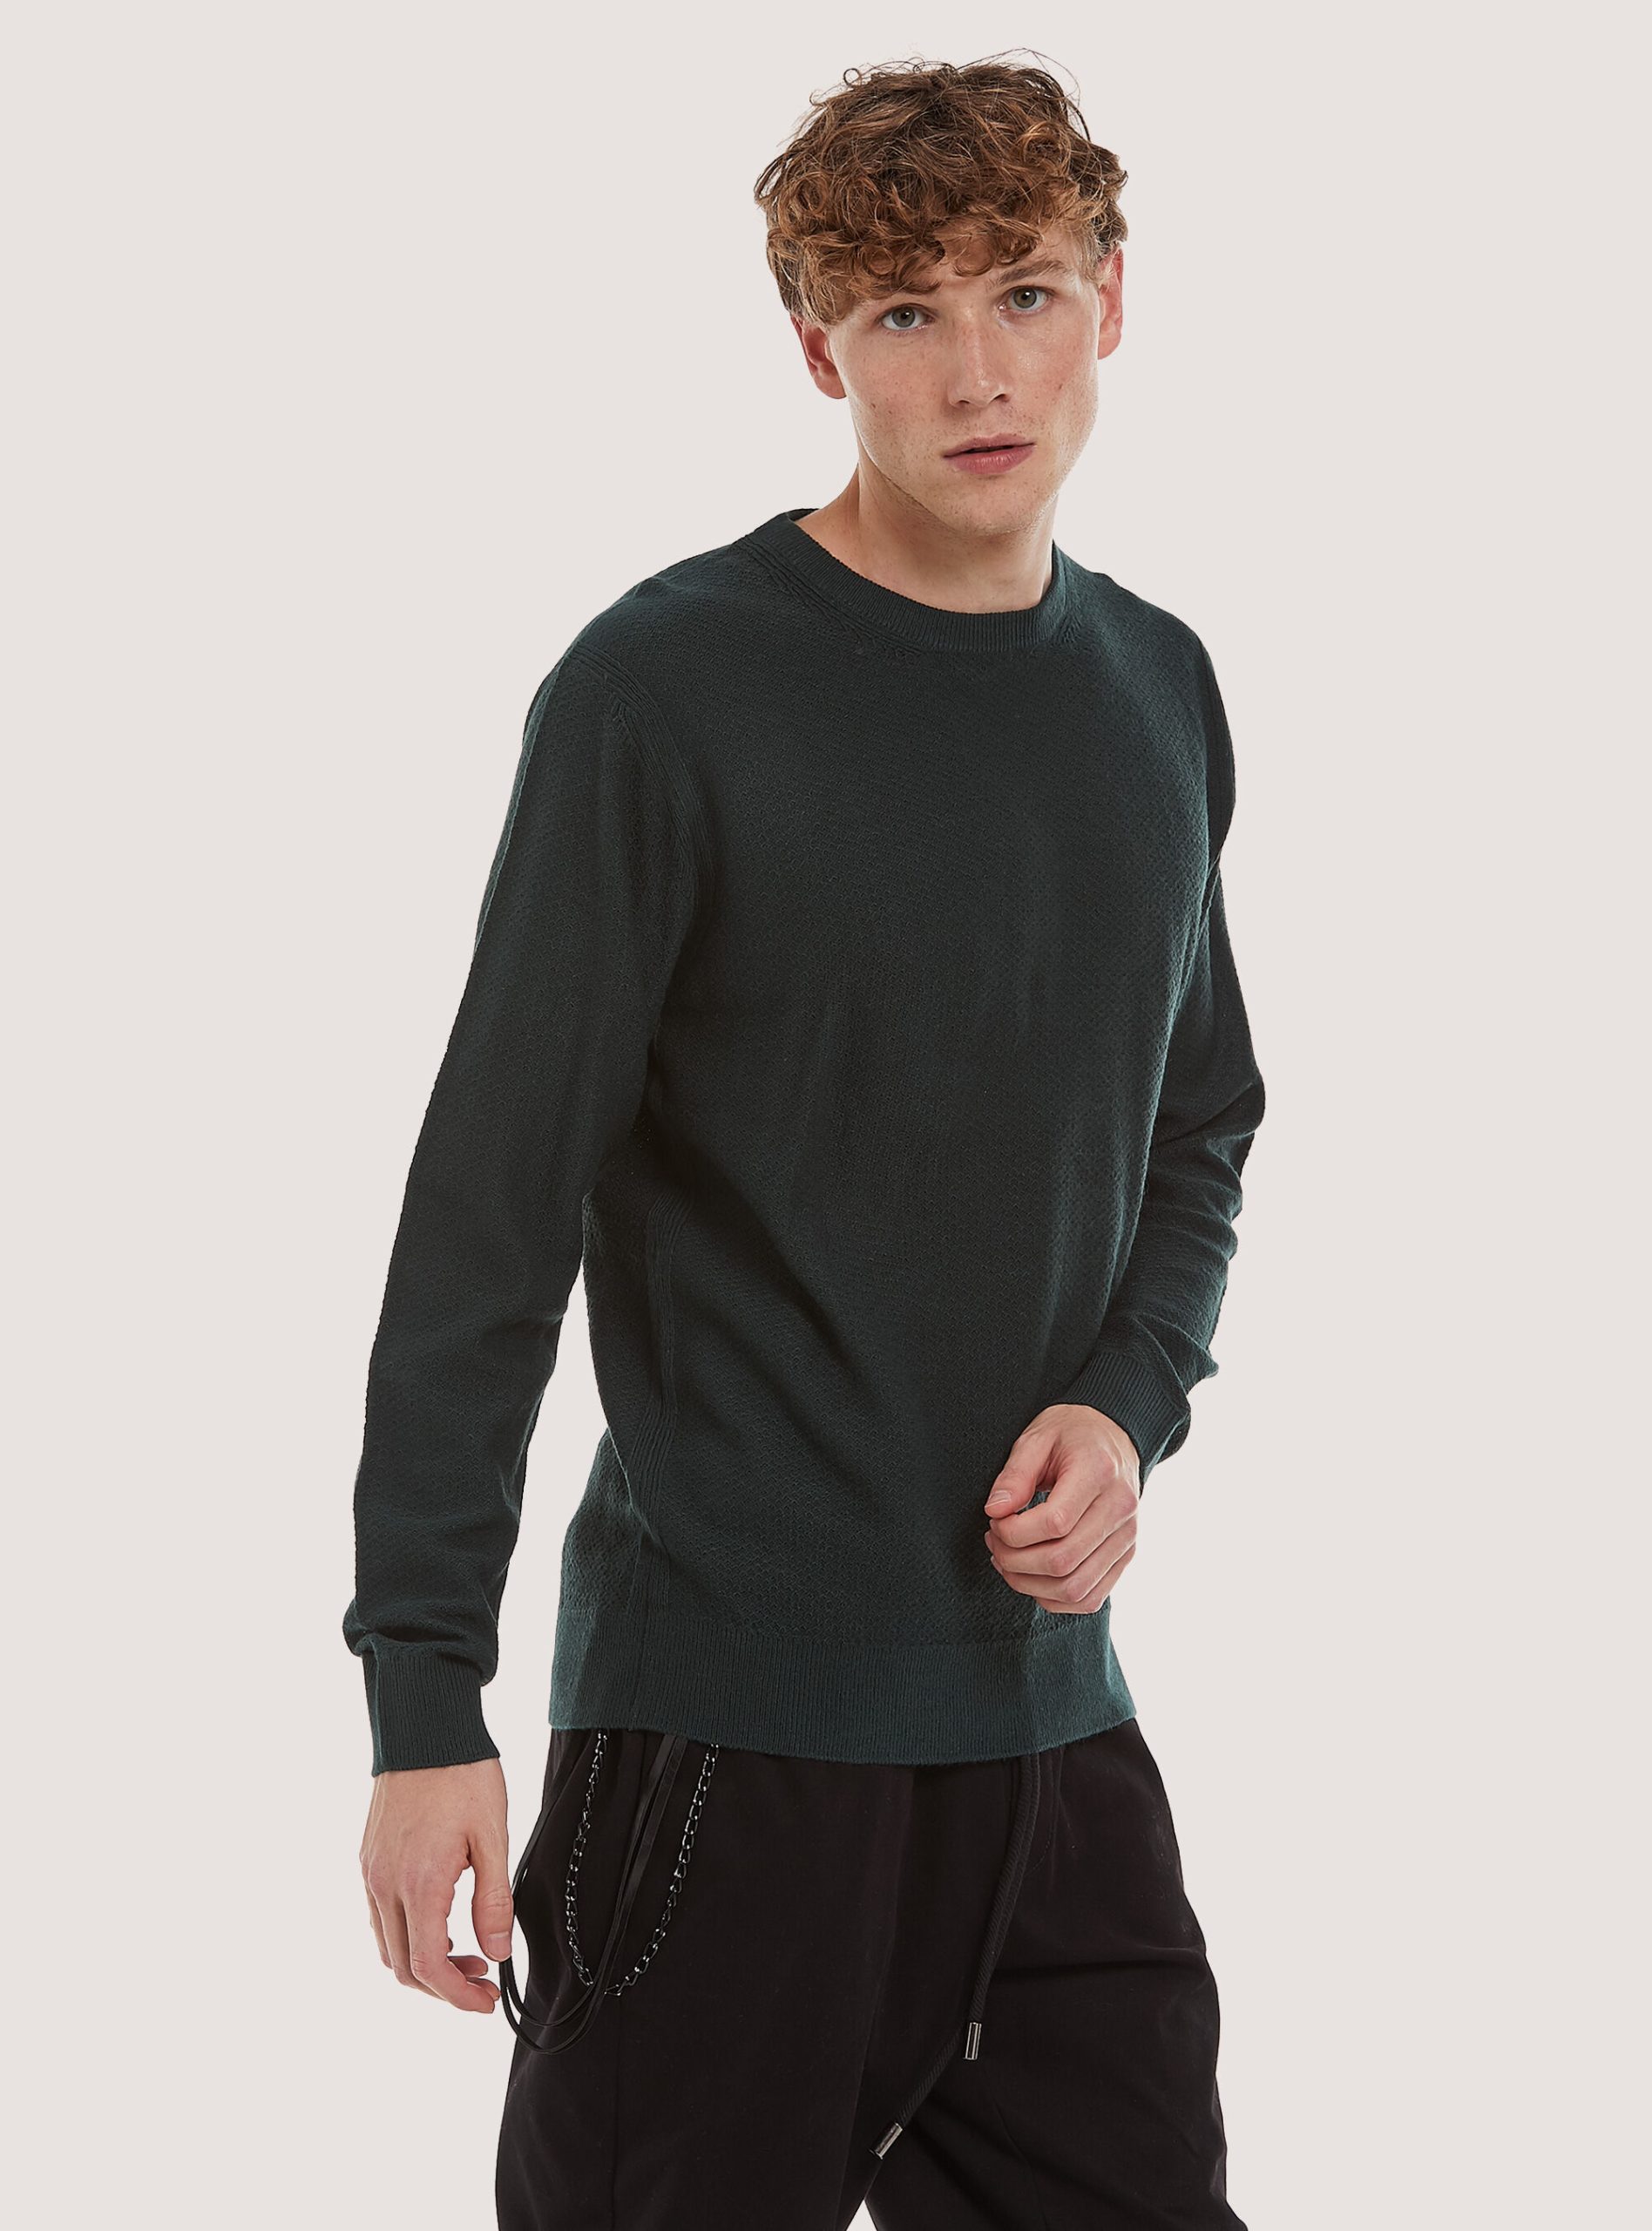 Gn1 Green Dark Kaufen Alcott Männer Crew-Neck Pullover With Texture Strickwaren – 2